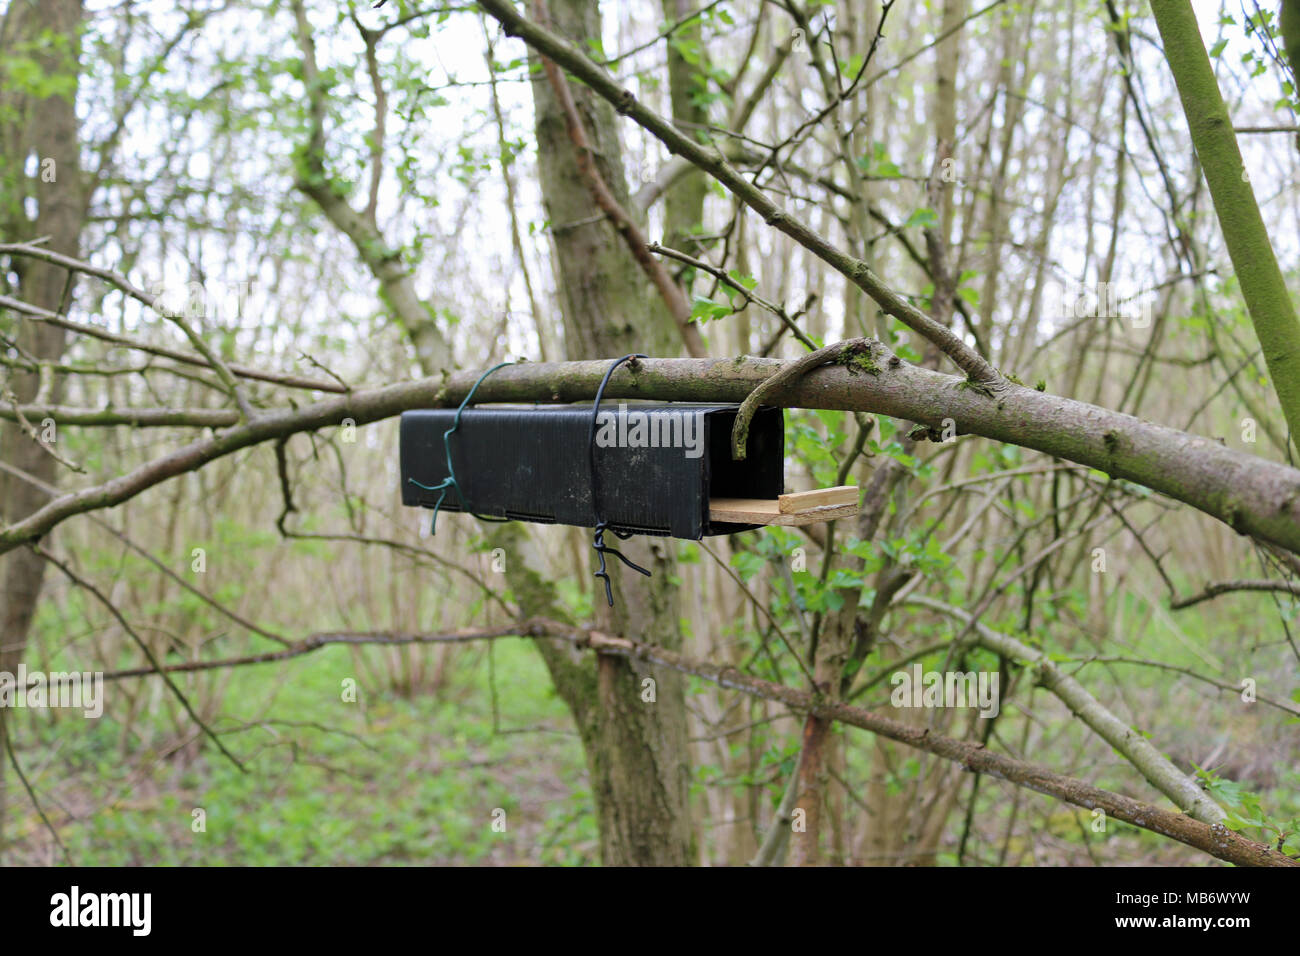 Aus schwarzem Kunststoff und Holz Haselmaus (Muscardinus avellanarius) Nest tube Umfrage Feld unter einem Baum mit einem Hintergrund von Wald Bäume befestigt. Stockfoto